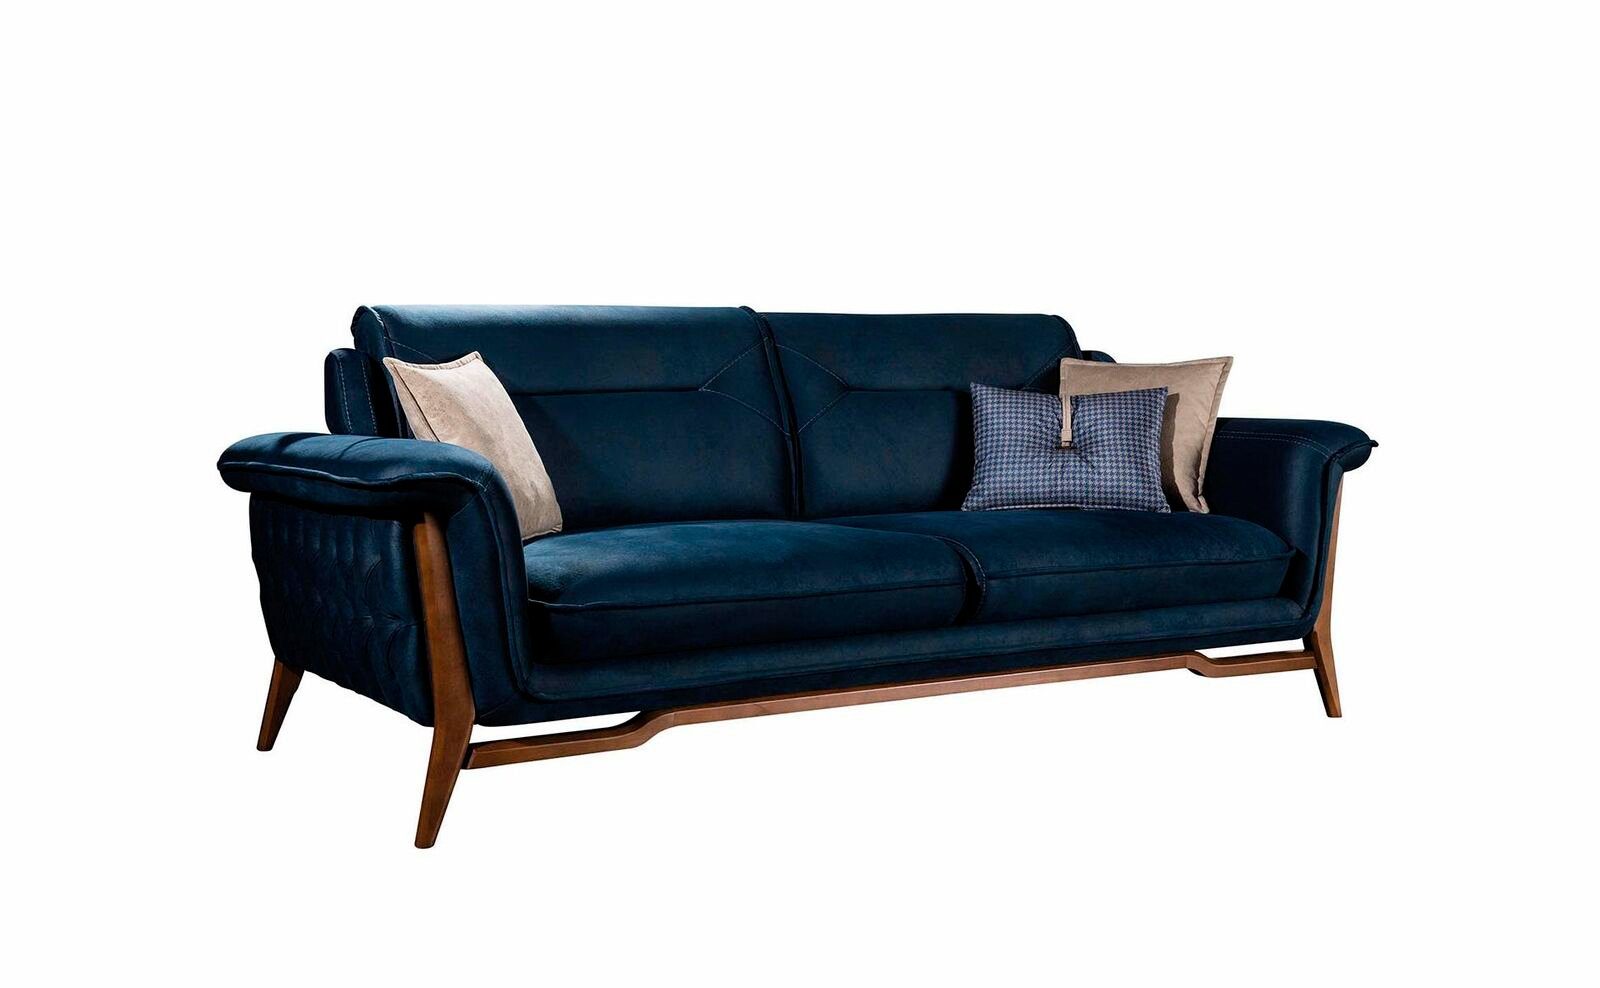 JVmoebel Sofa Blaues Sofa Wohnzimmercouch Luxus Dreisitzer Textil Sitzer Edler Stil, 1 Teile, Made in Europe